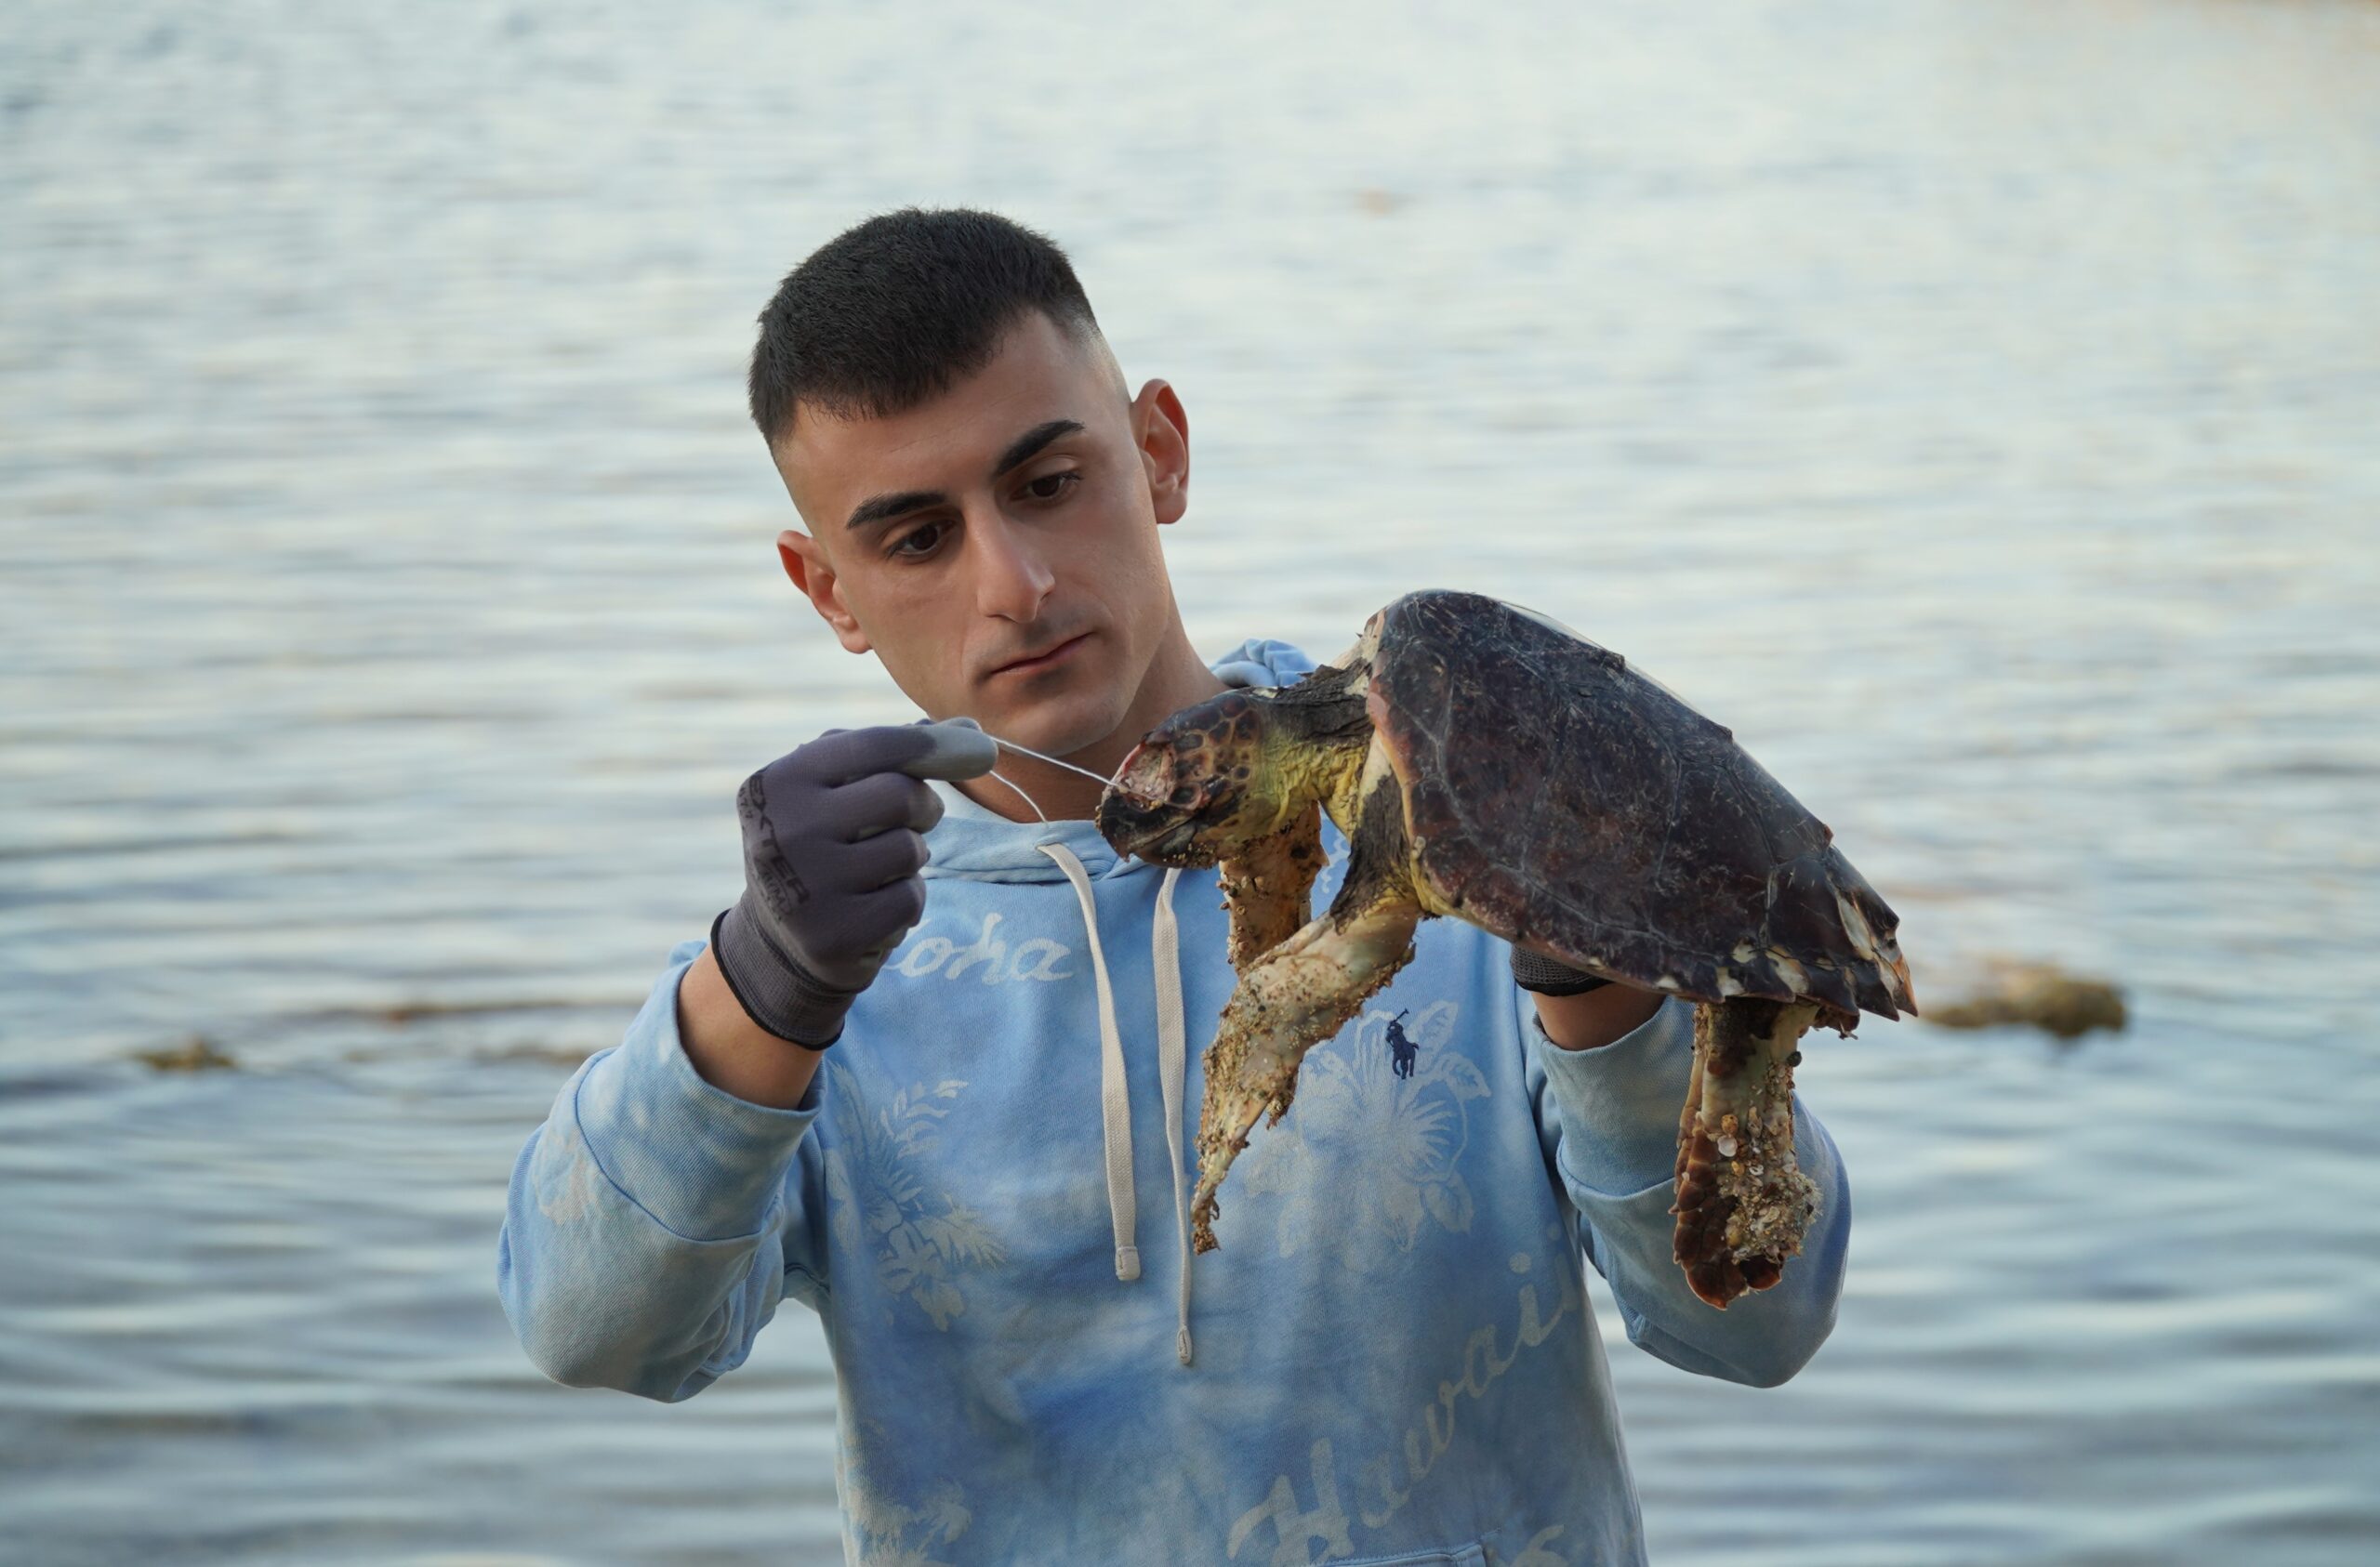 Sebastian Colnaghi, nominato da Legambiente ambasciatore del progetto “Tartalove” a difesa delle tartarughe marine